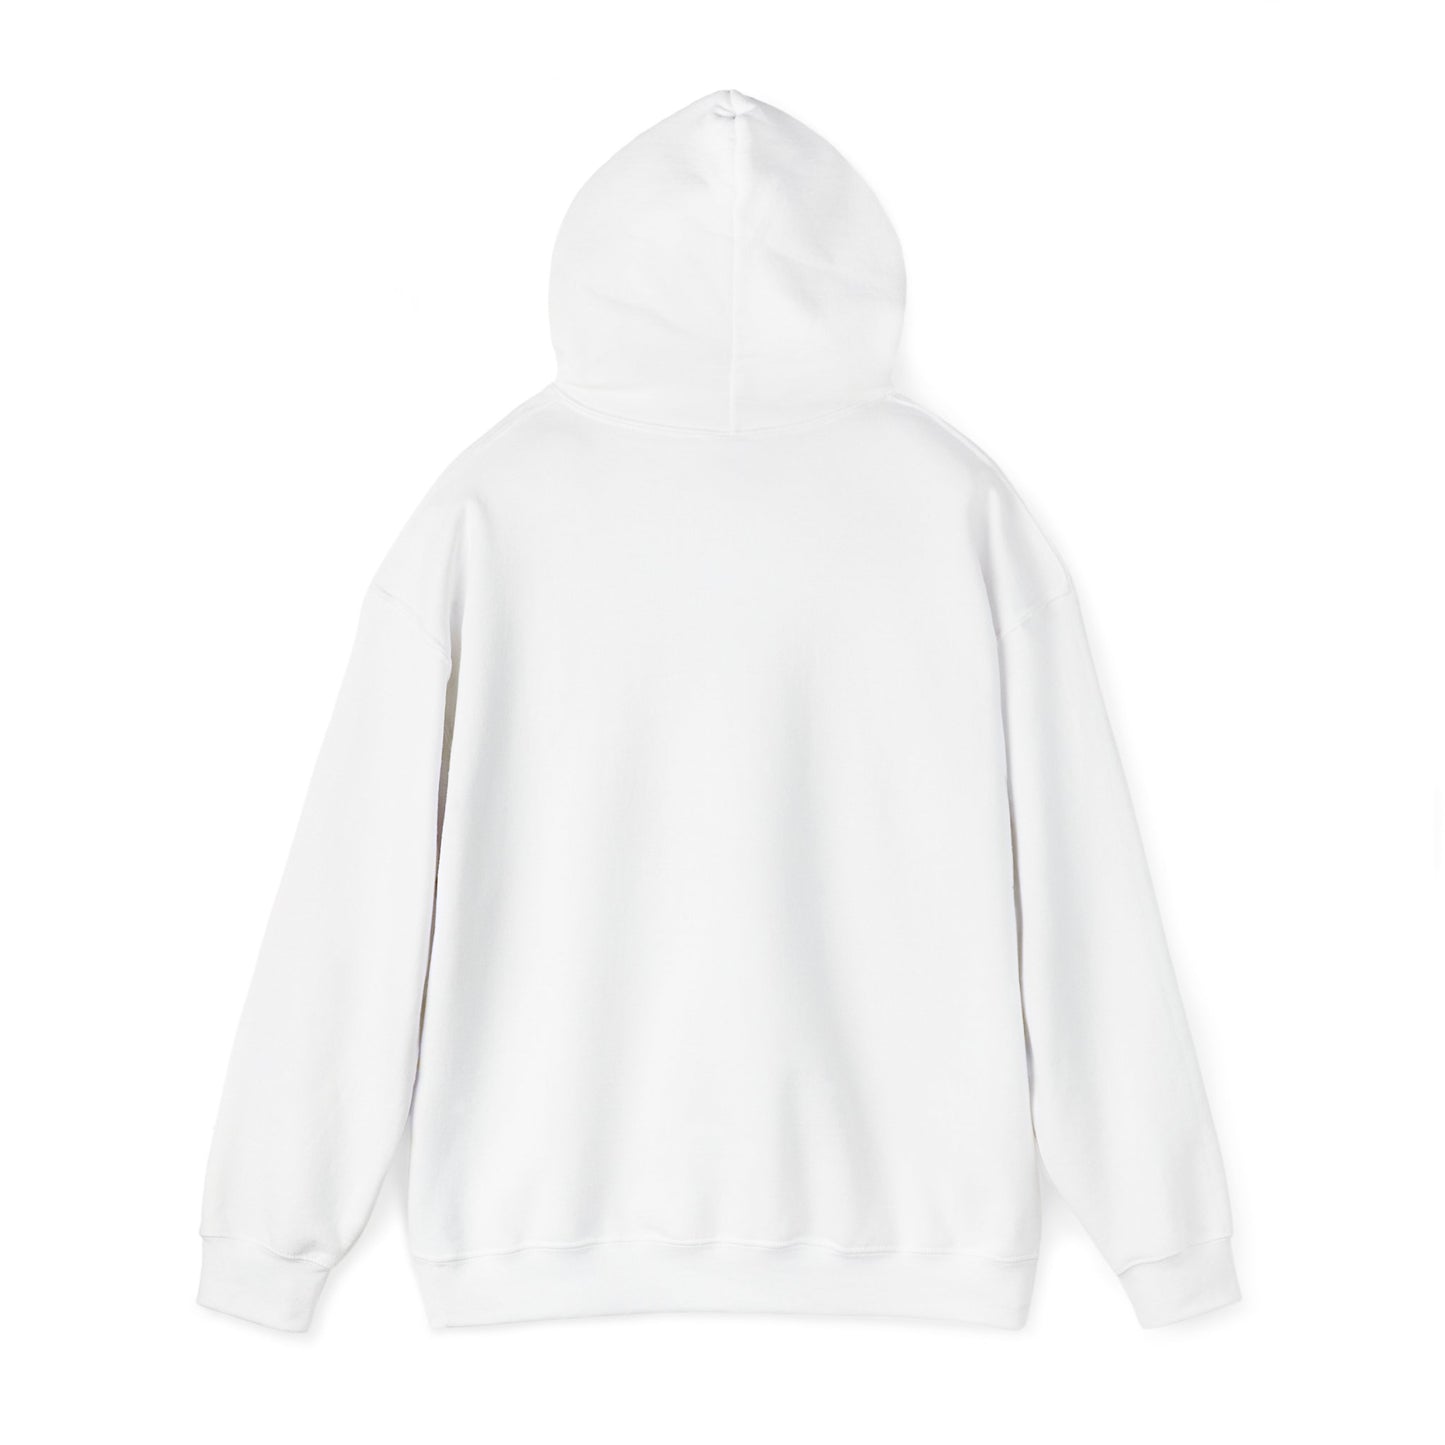 SELF-LOVE Wear IT Proudly Unisex Heavy Blend™ Hooded Sweatshirt